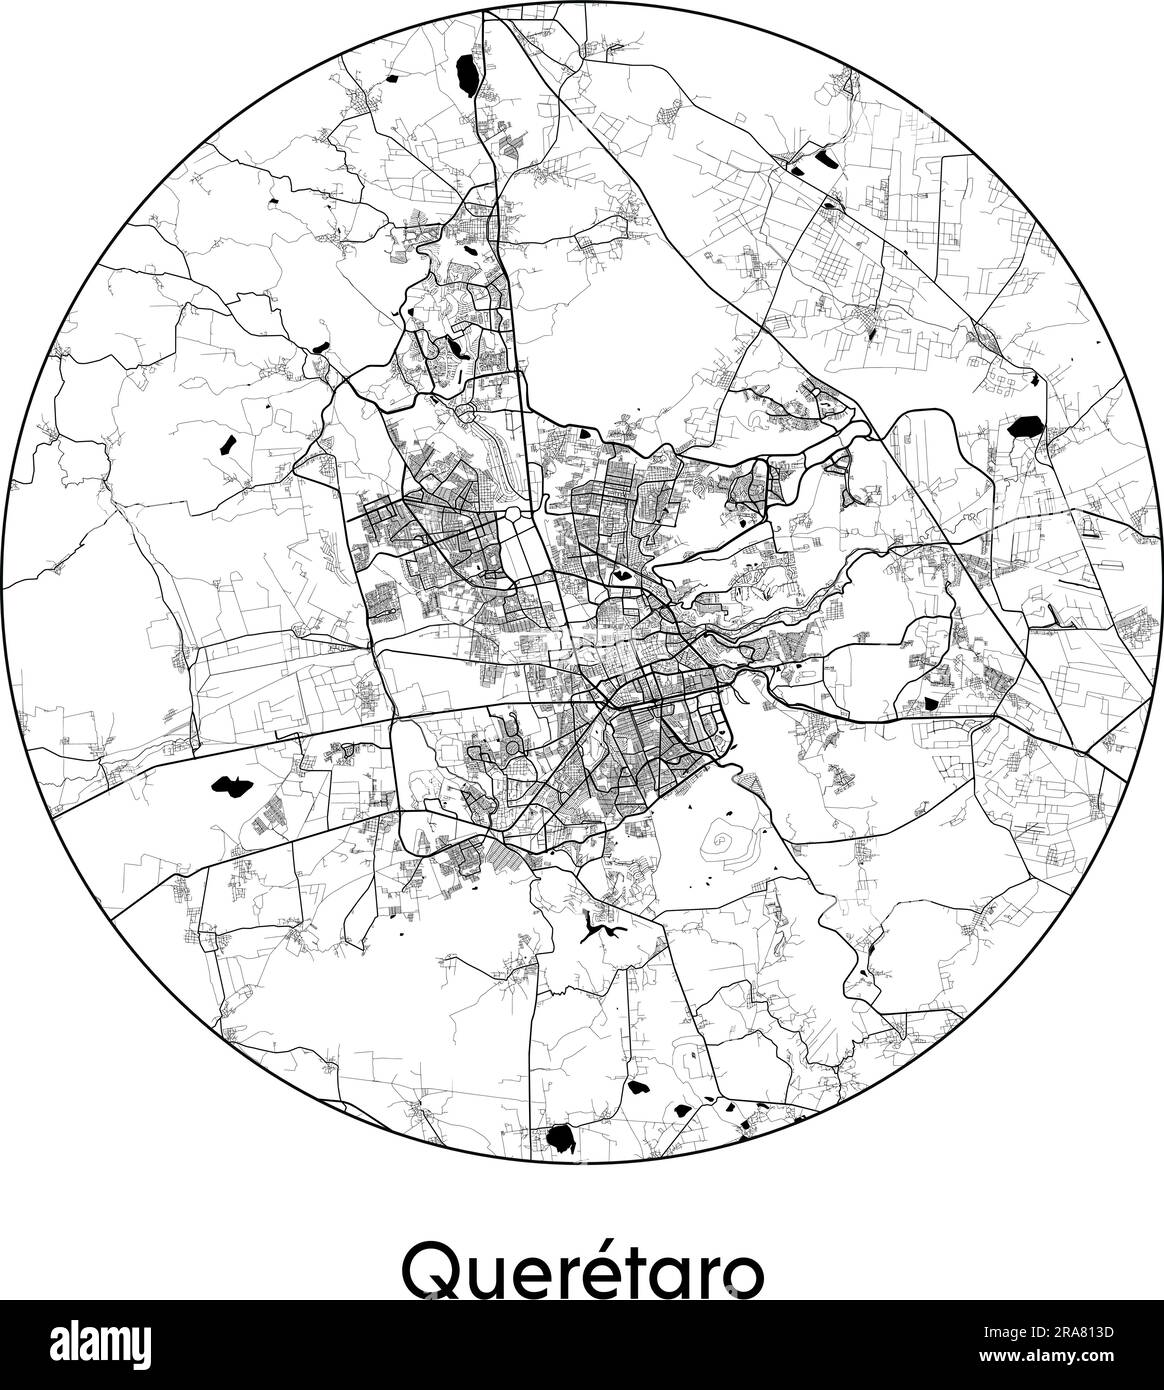 Carte de la ville Queretaro Mexique Amérique du Nord illustration vectorielle noir blanc Illustration de Vecteur